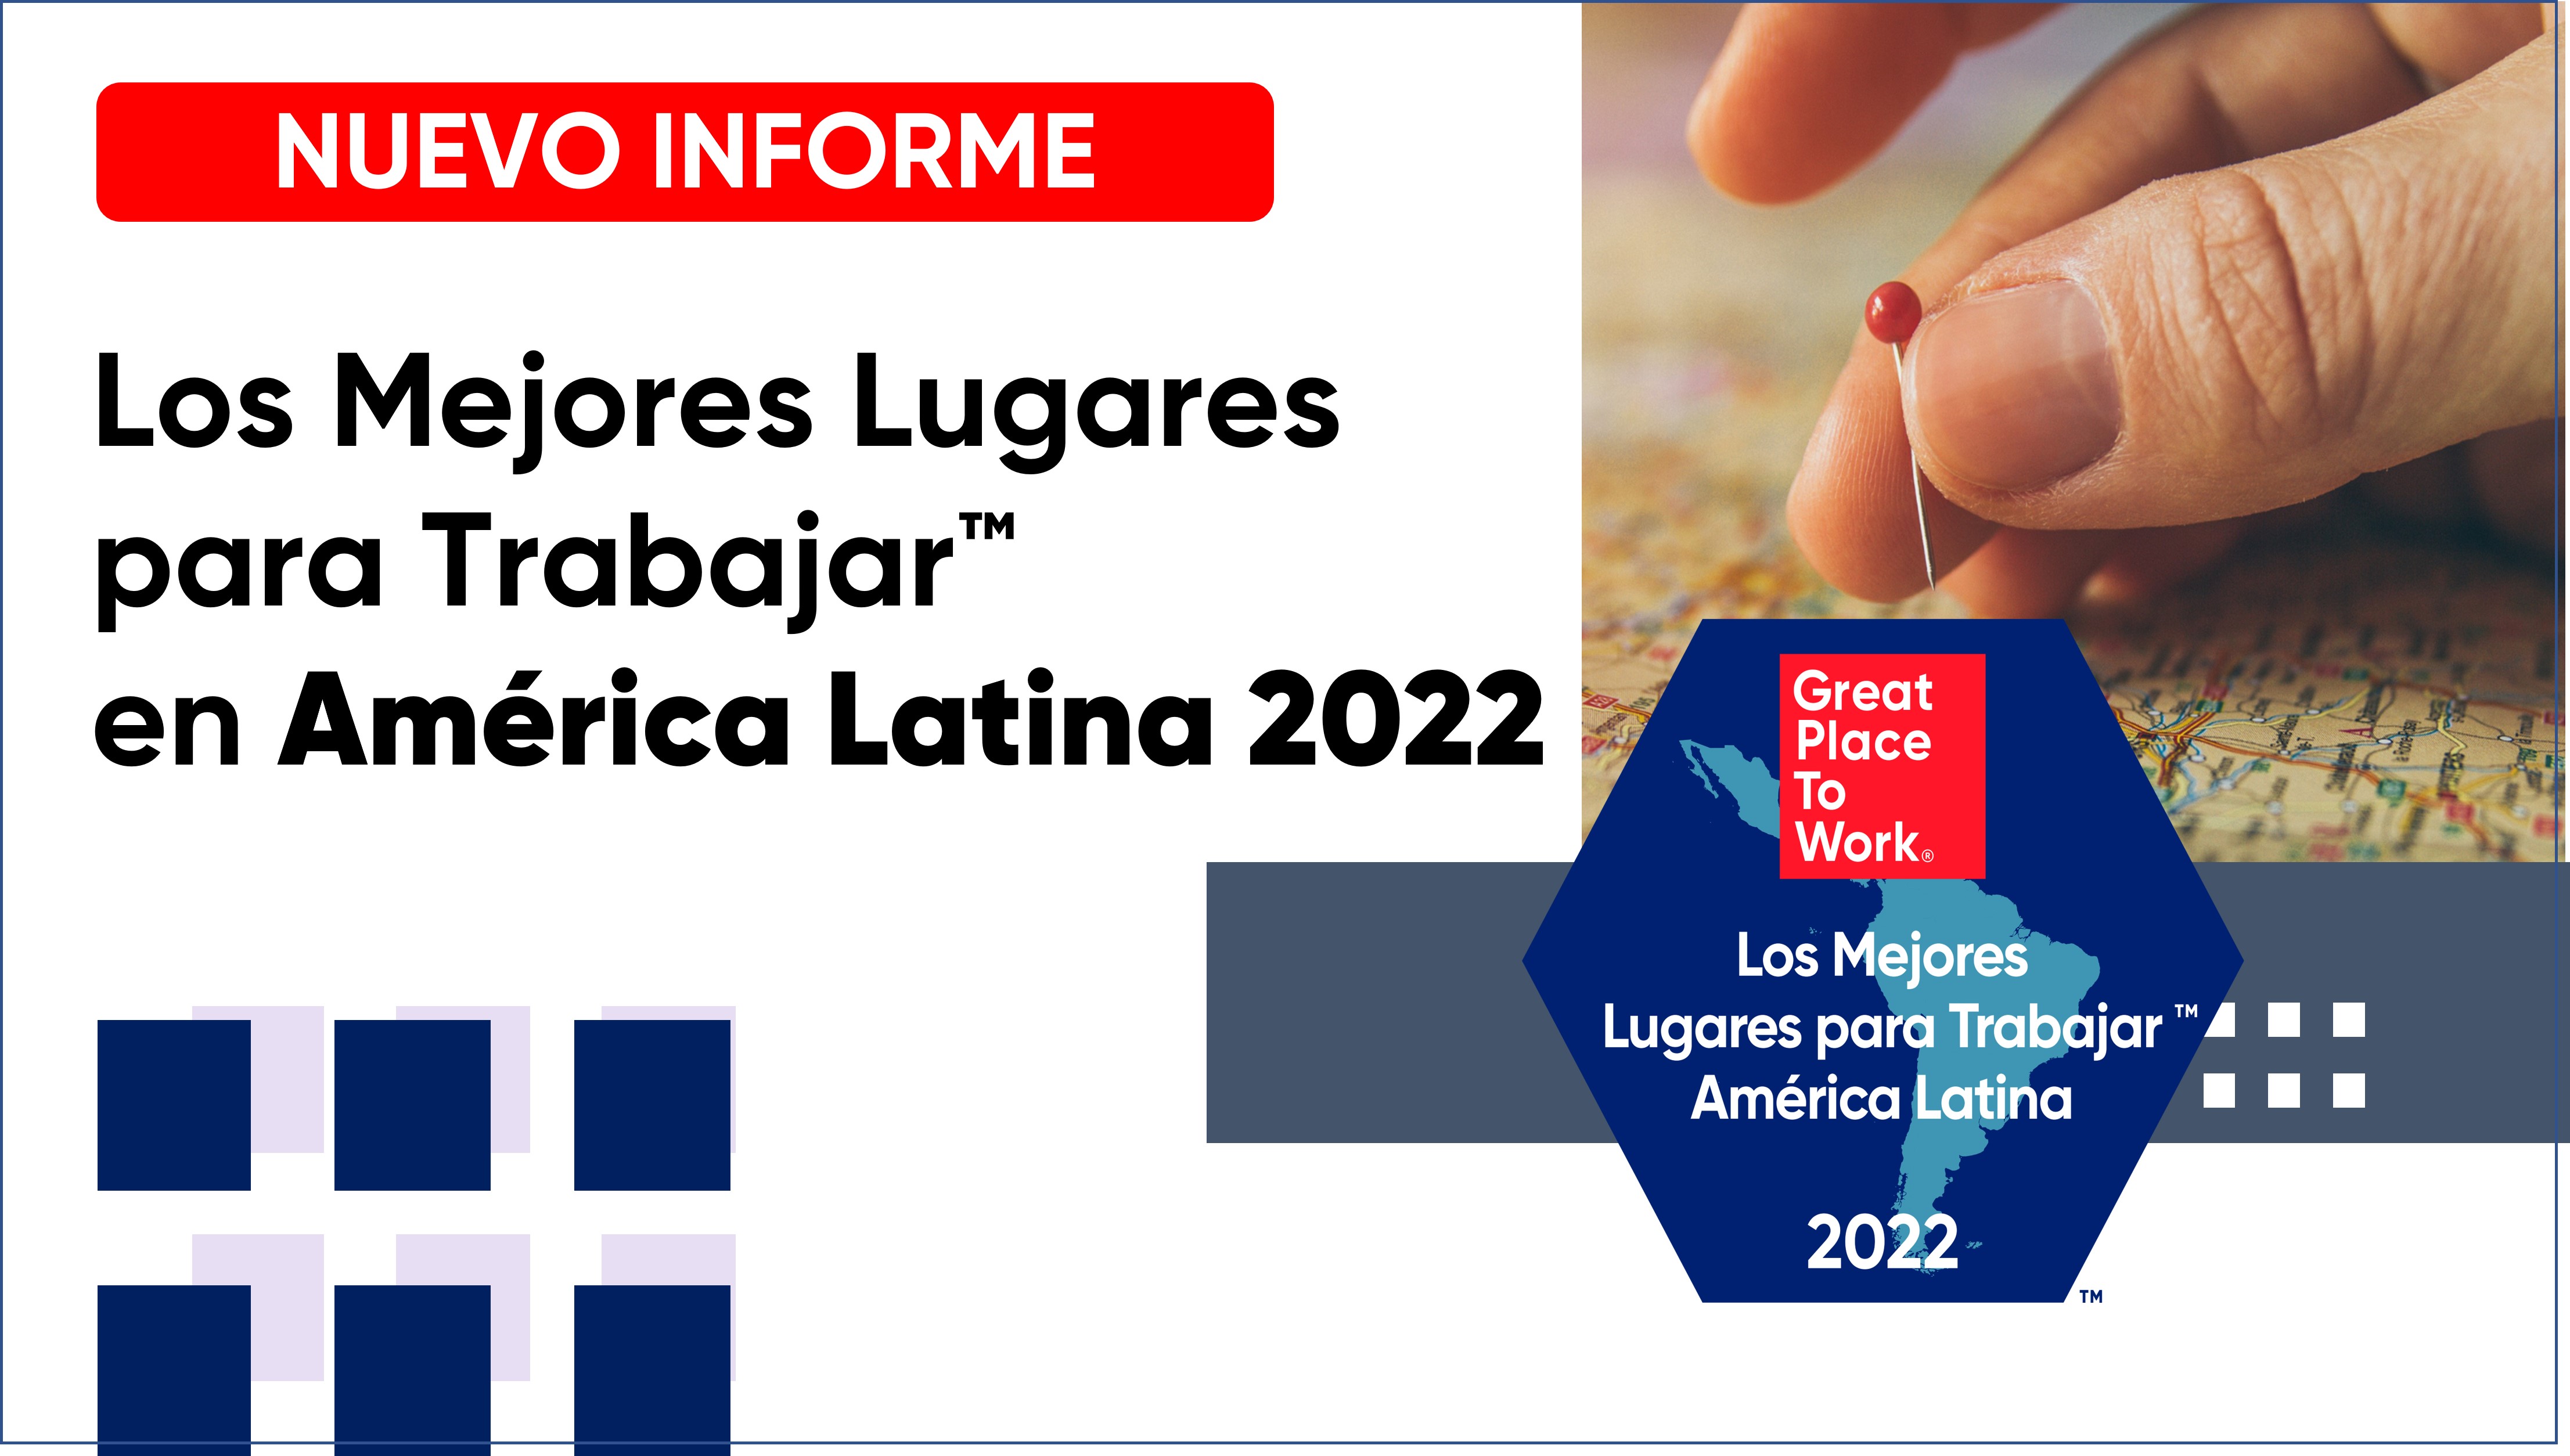 Informe - Los Mejores Lugares para Trabajar™ en América Latina 2022